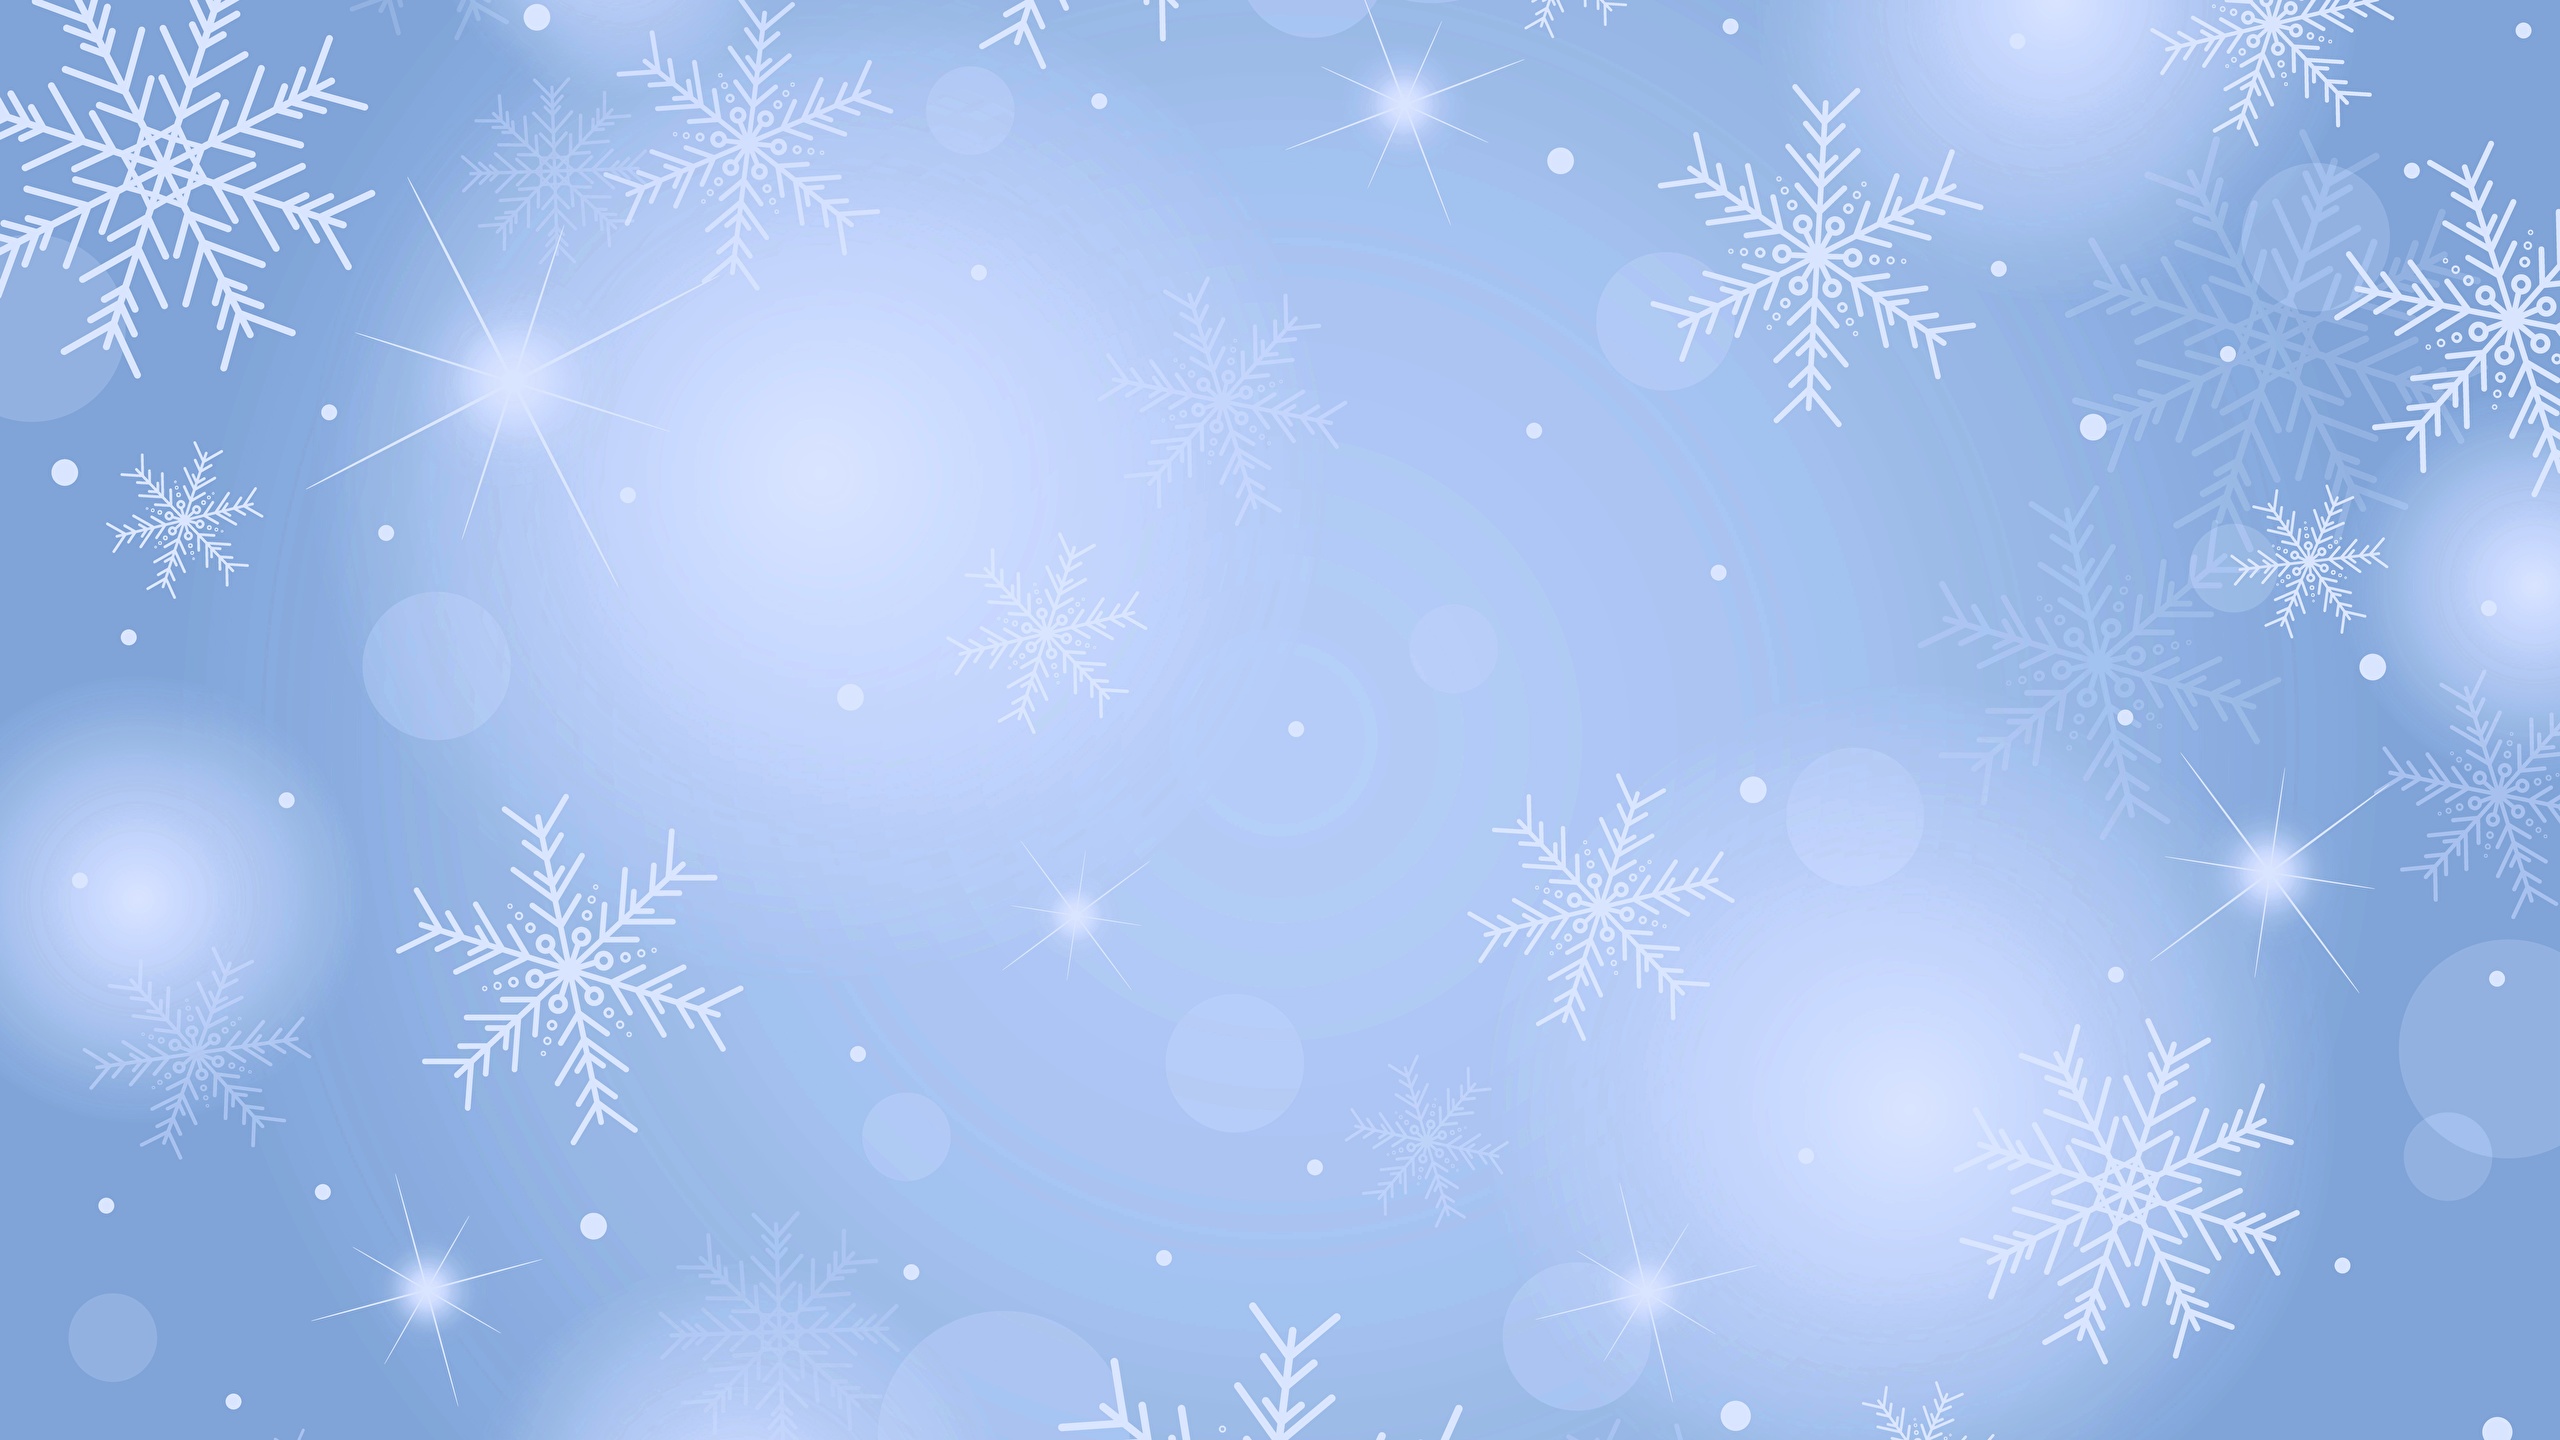 壁紙 2560x1440 テクスチャー 新年 雪の結晶 ダウンロード 写真